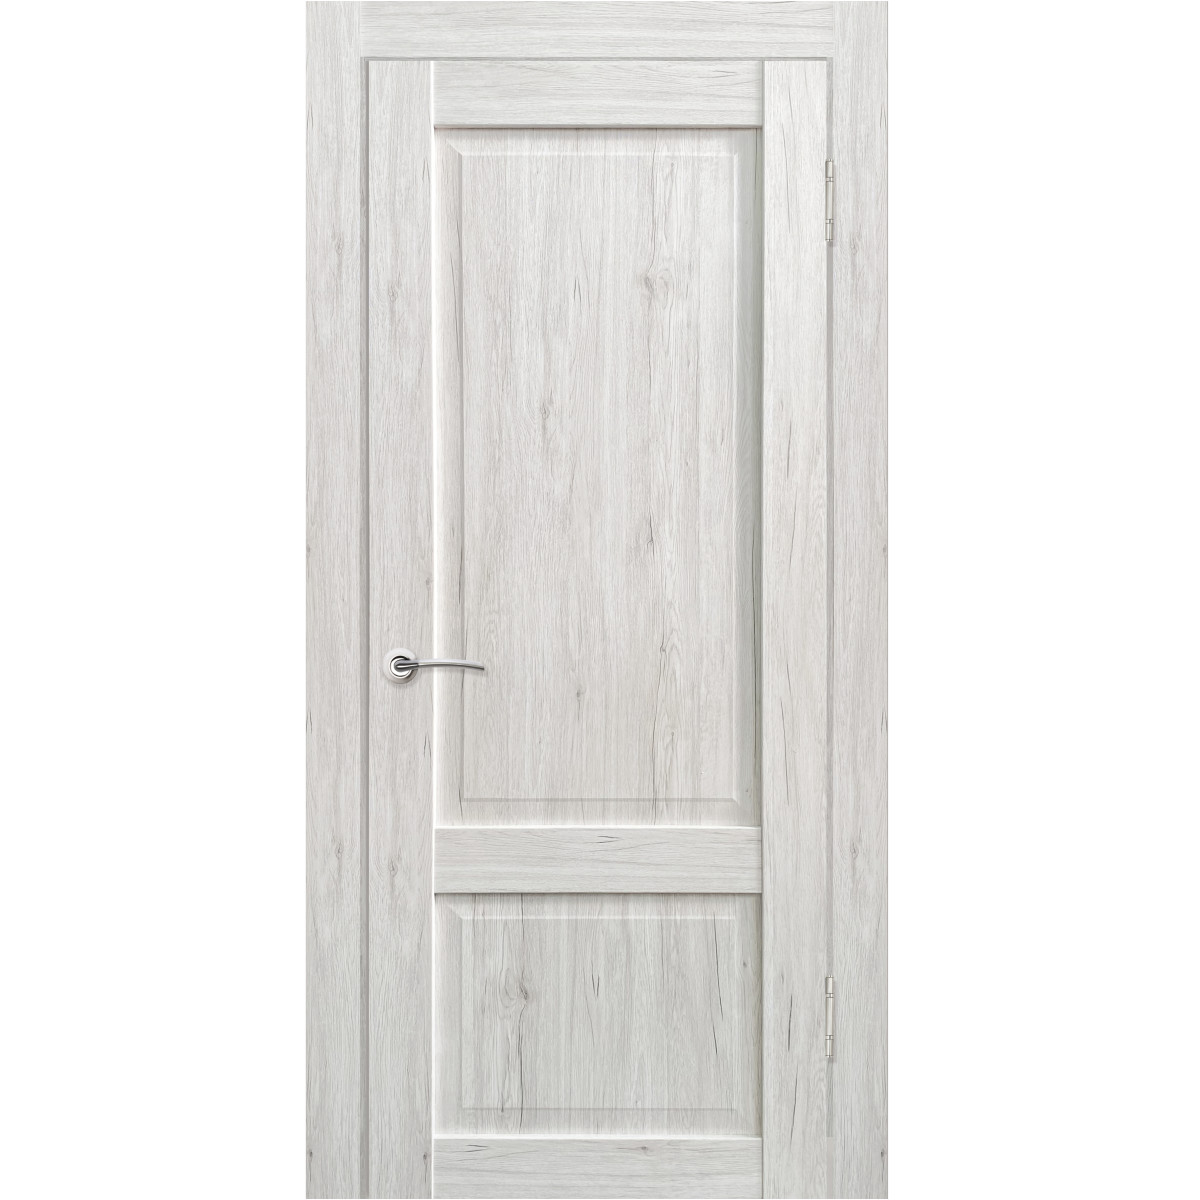 Дверь межкомнатная Амелия 80х200 см с фурнитурой, ПВХ, цвет рустик серый